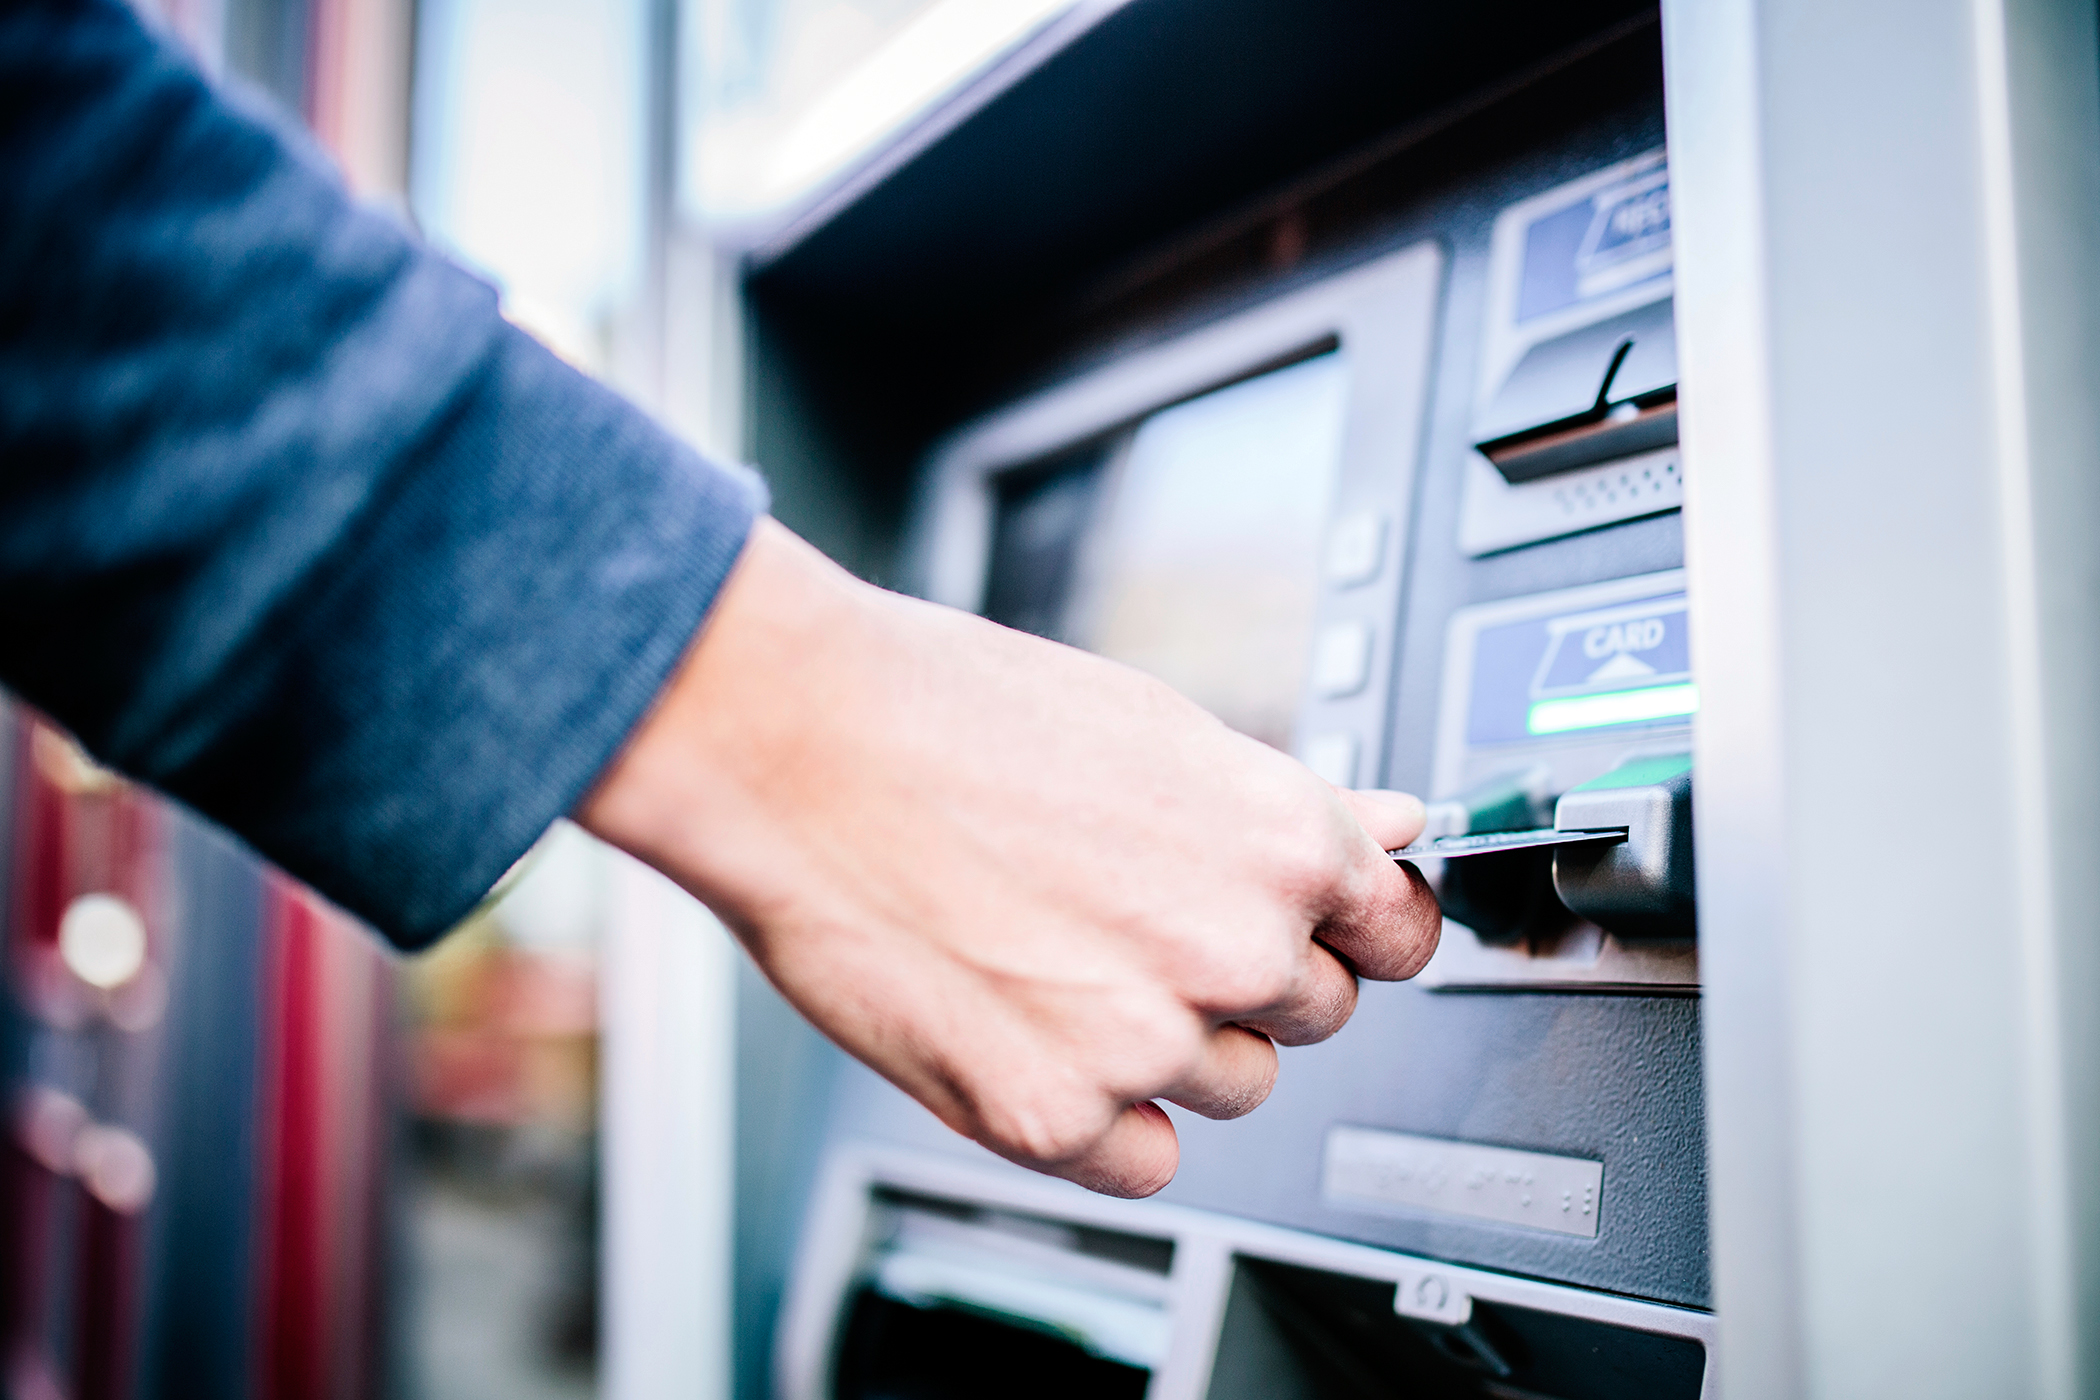 Оплата имущественными правами. Деньги в банкомате. Возле банкомата. Человек около банкомата. Банкомат (ATM).